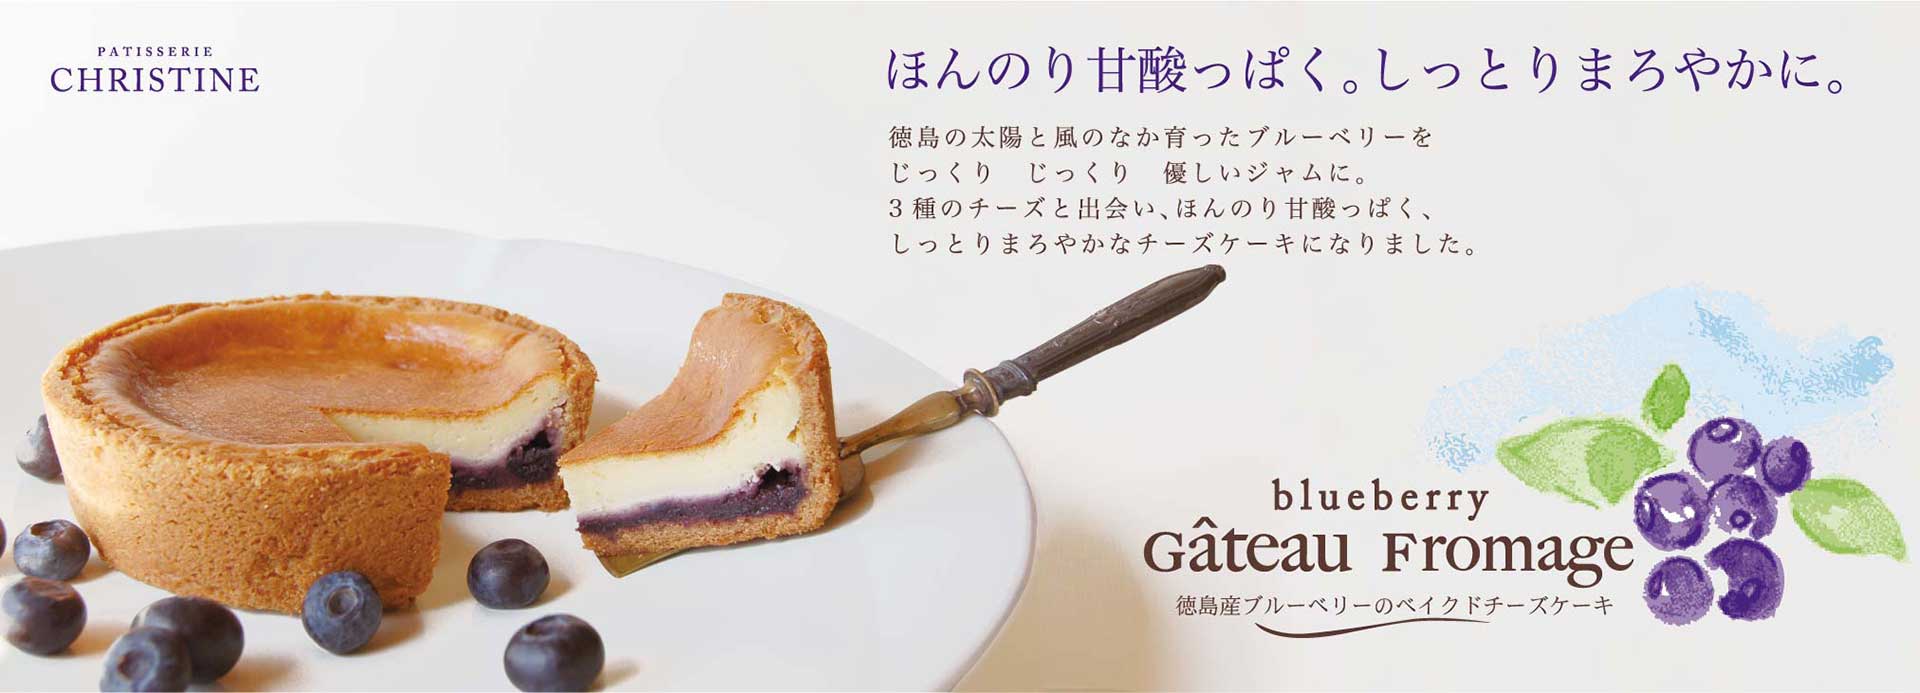 徳島産ブルーベリーベイクドチーズケーキパッケージデザイン